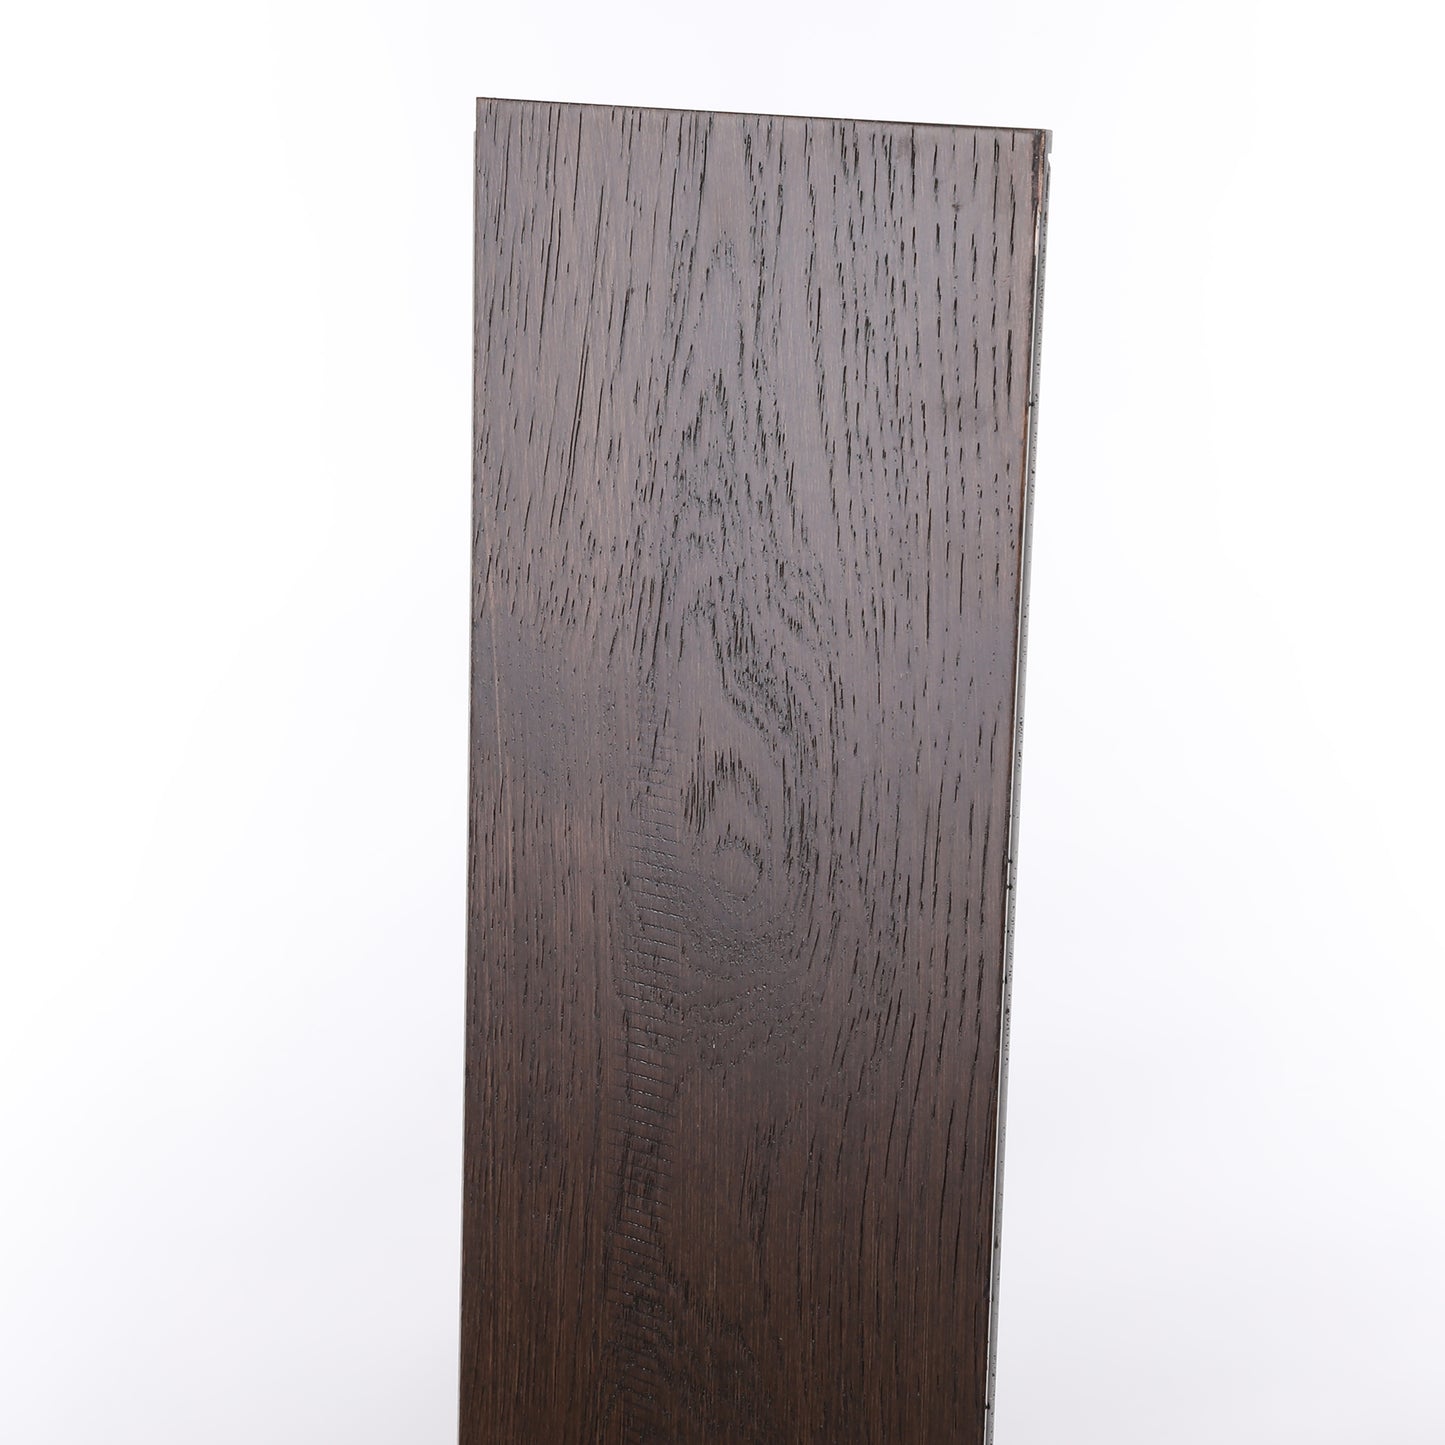 8mm Hudson Bay Waterproof Engineered Hardwood Flooring 7.48 in. Wide x Varying Length Long